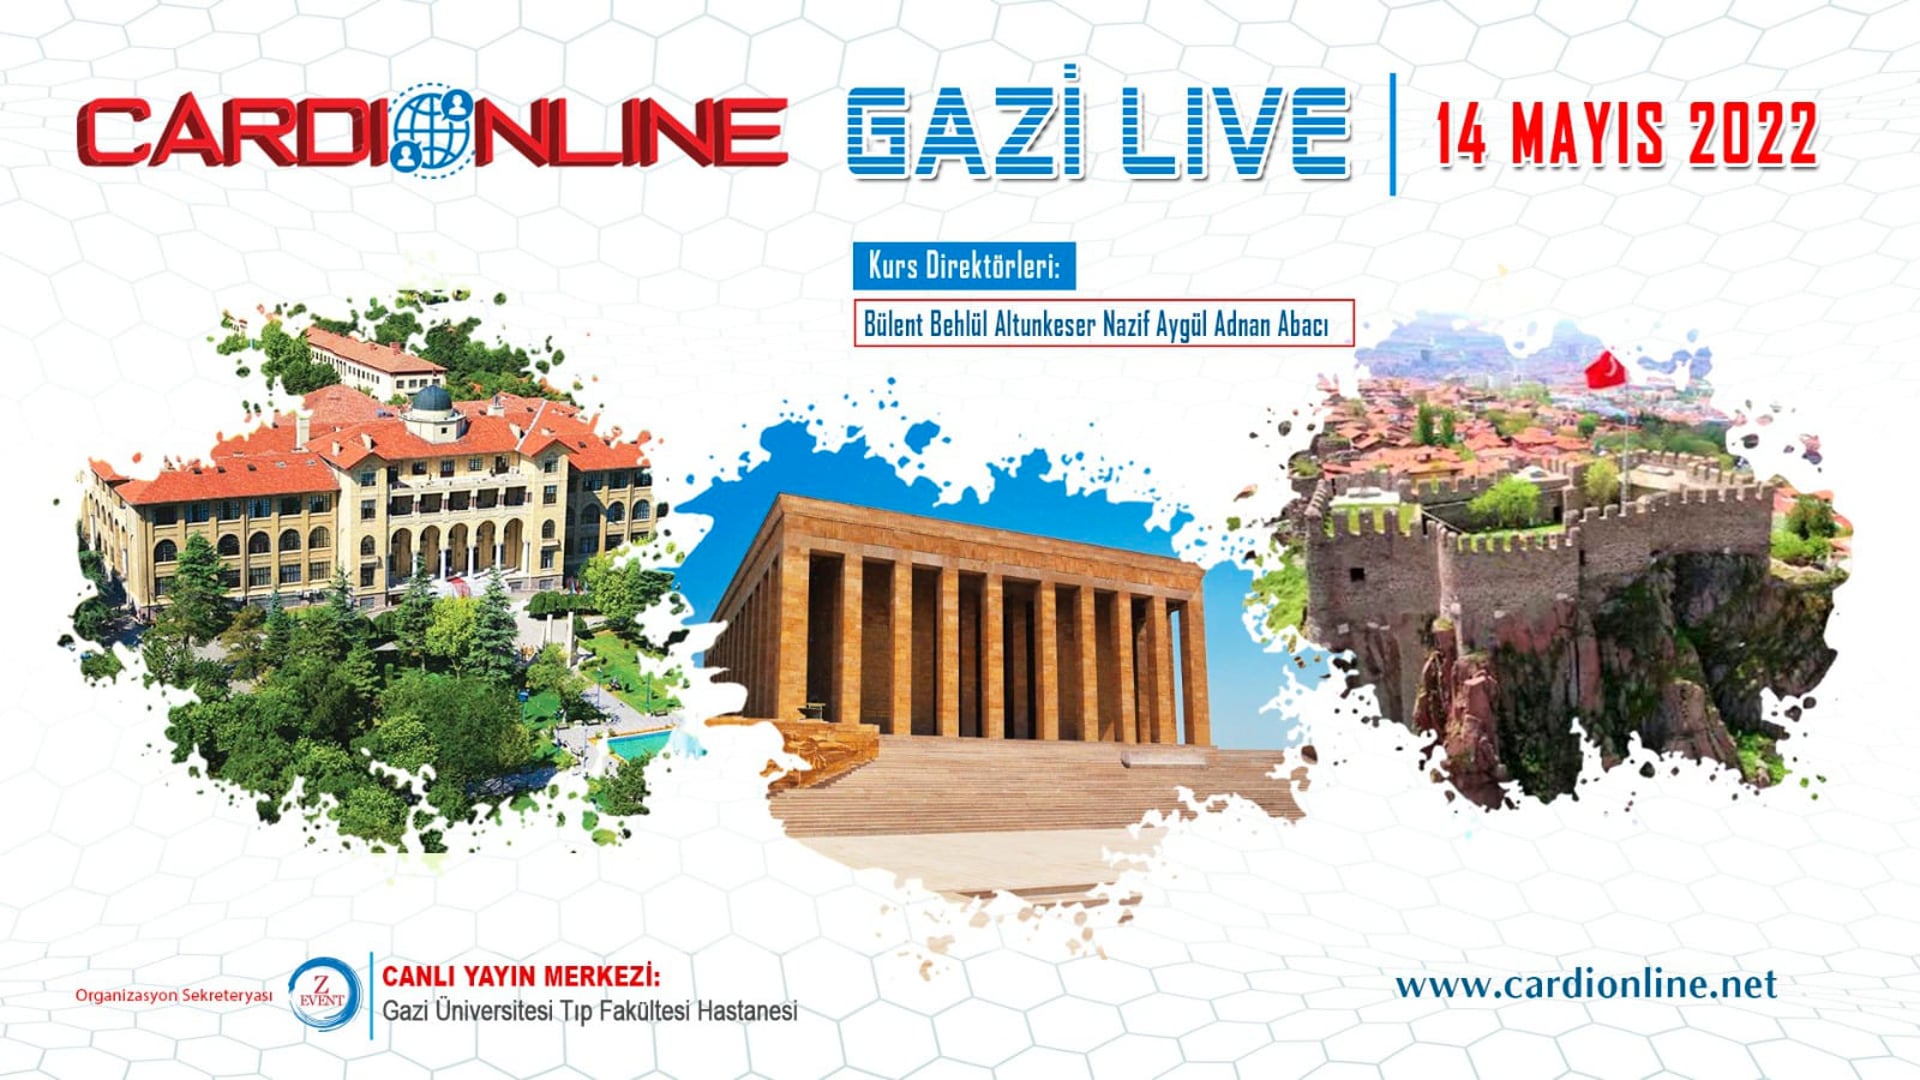 Cardionline Gazi Live 14 Mayıs 2022